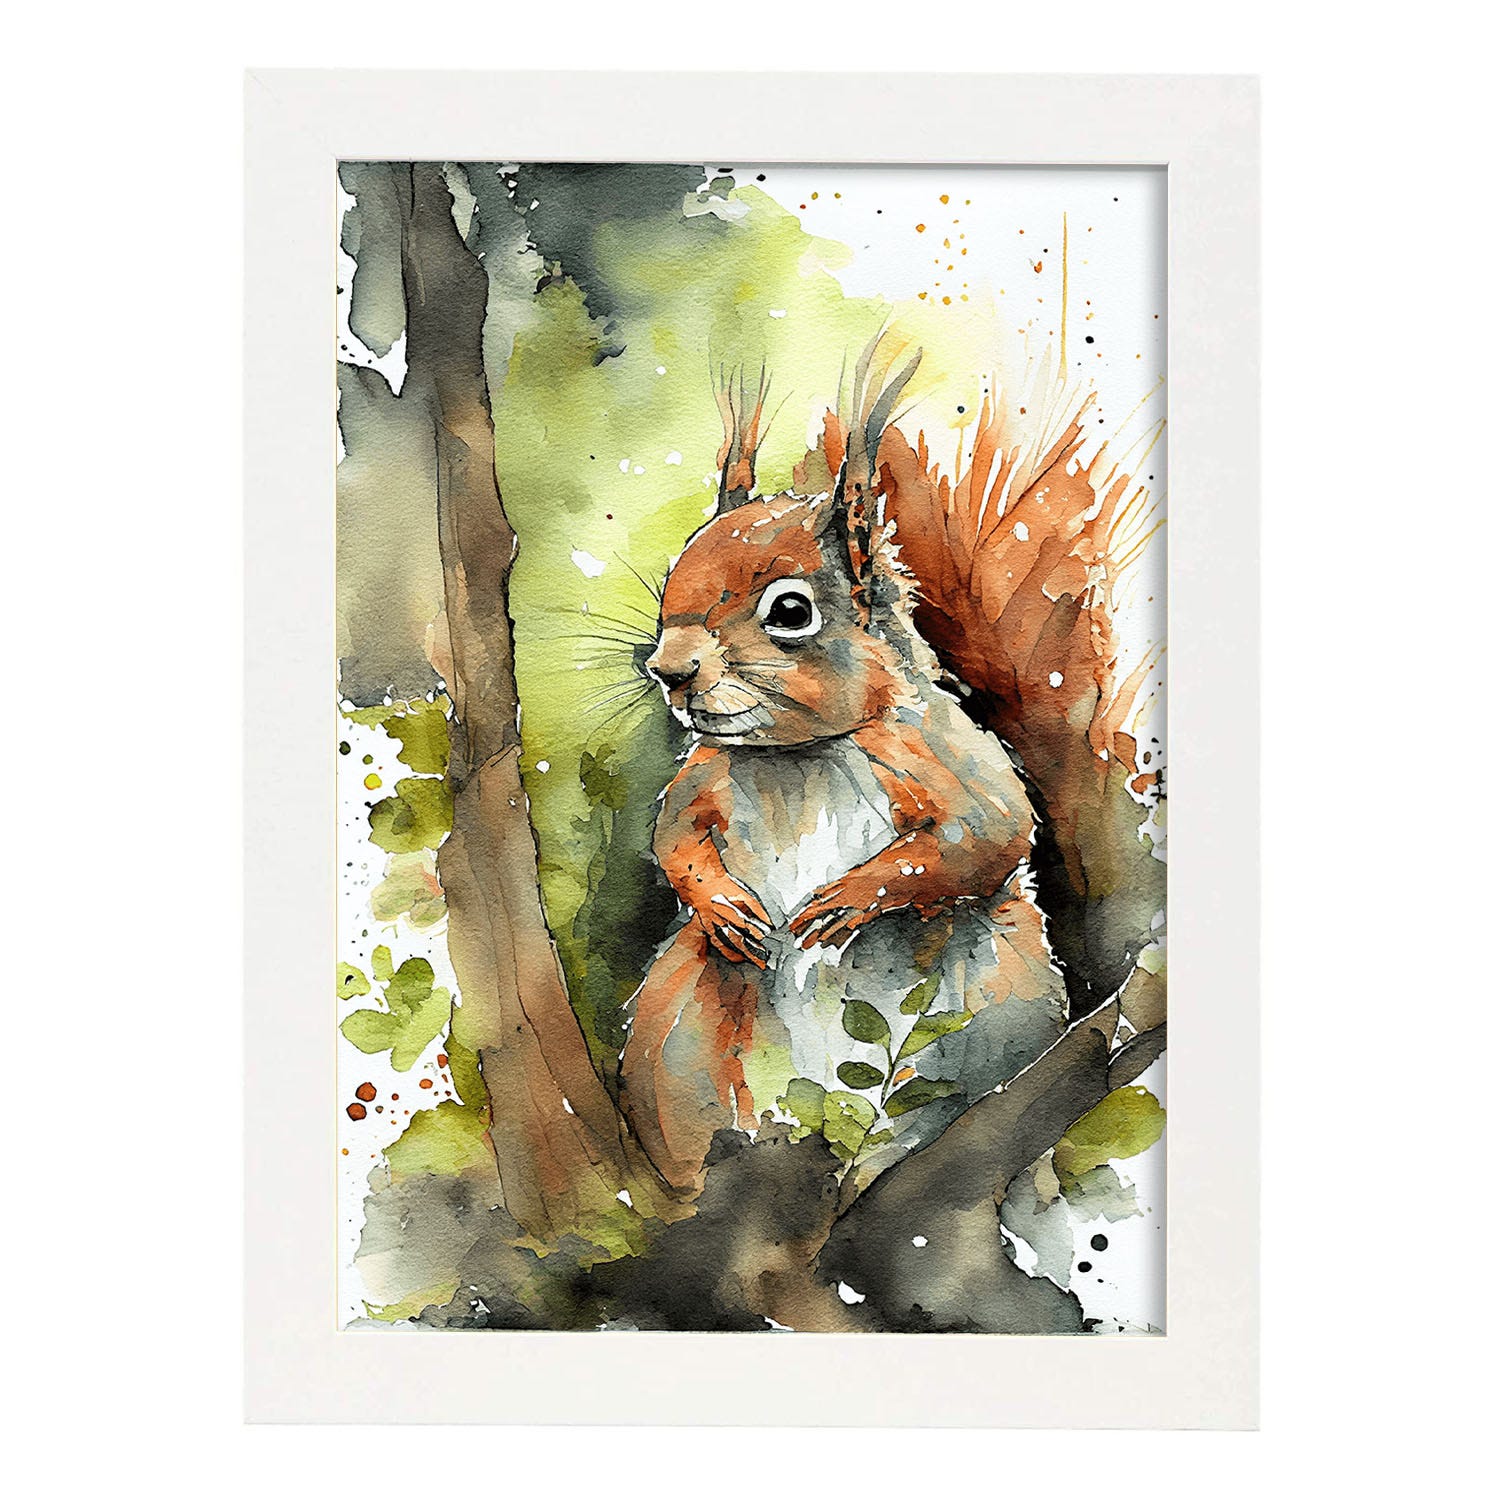 L'écureuil, peinture acrylique sur toile, décoration nature, cocooning,  féerie - Un grand marché